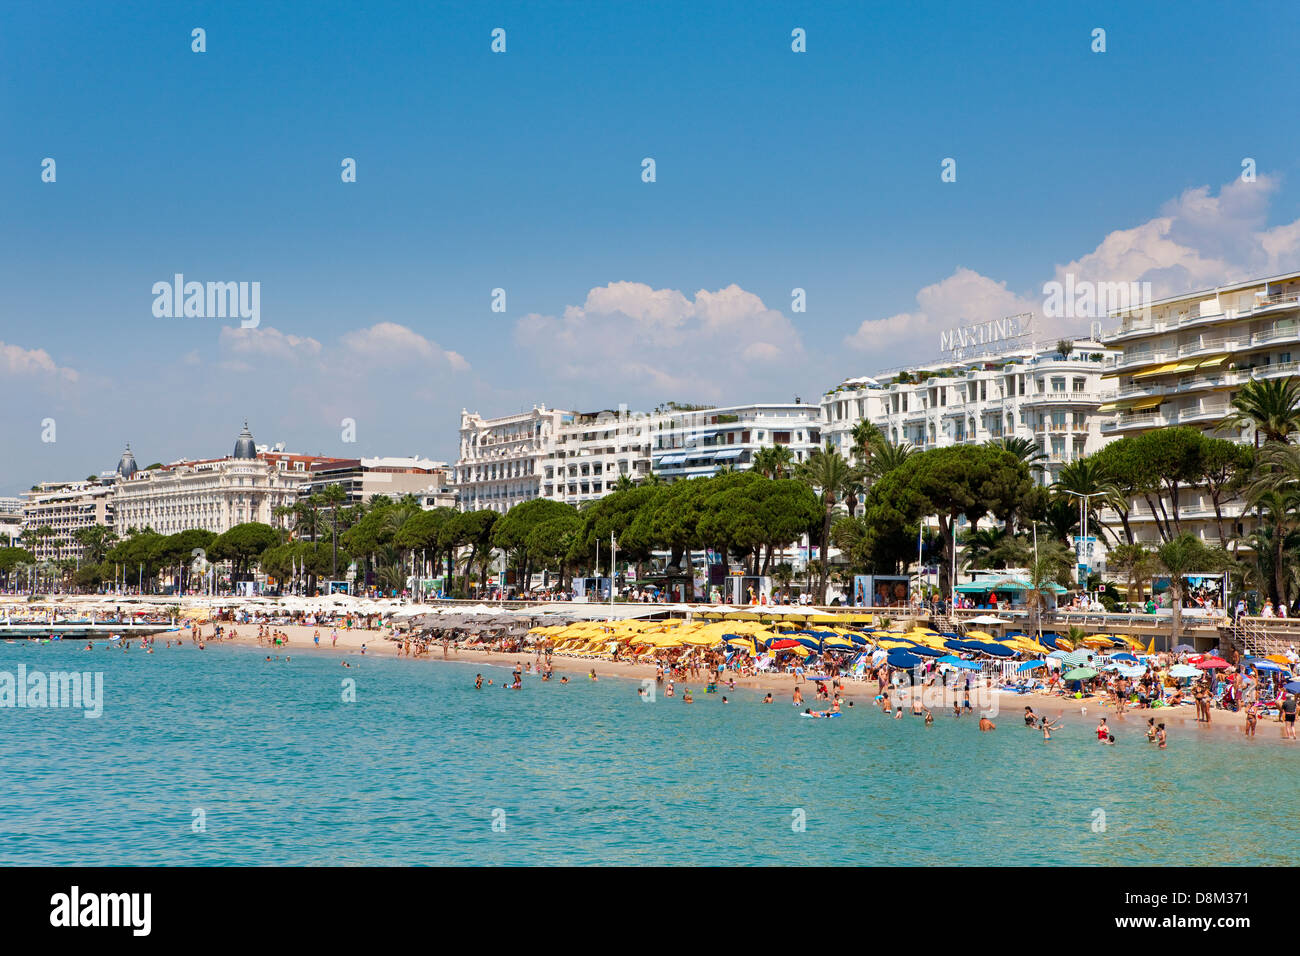 Il famoso hotel Martinez, Boulevard de la Croisette lungo il lungomare, Cannes, Francia Foto Stock